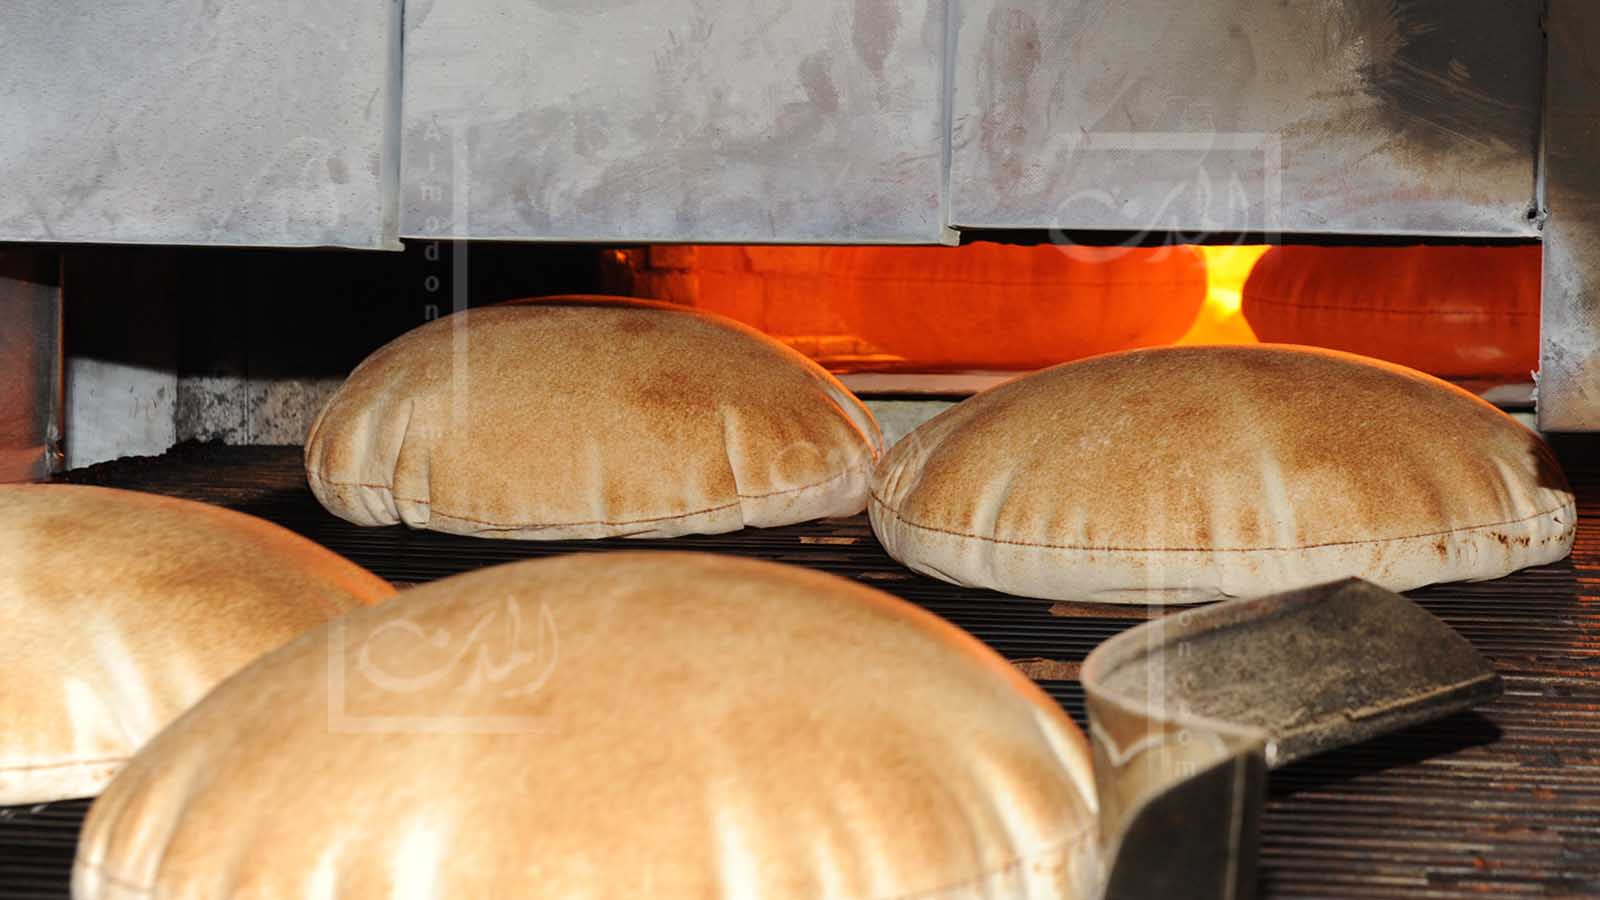 62 يوماً من "البحبوحة": زيادة وزن ربطة الخبز مؤقتاً!